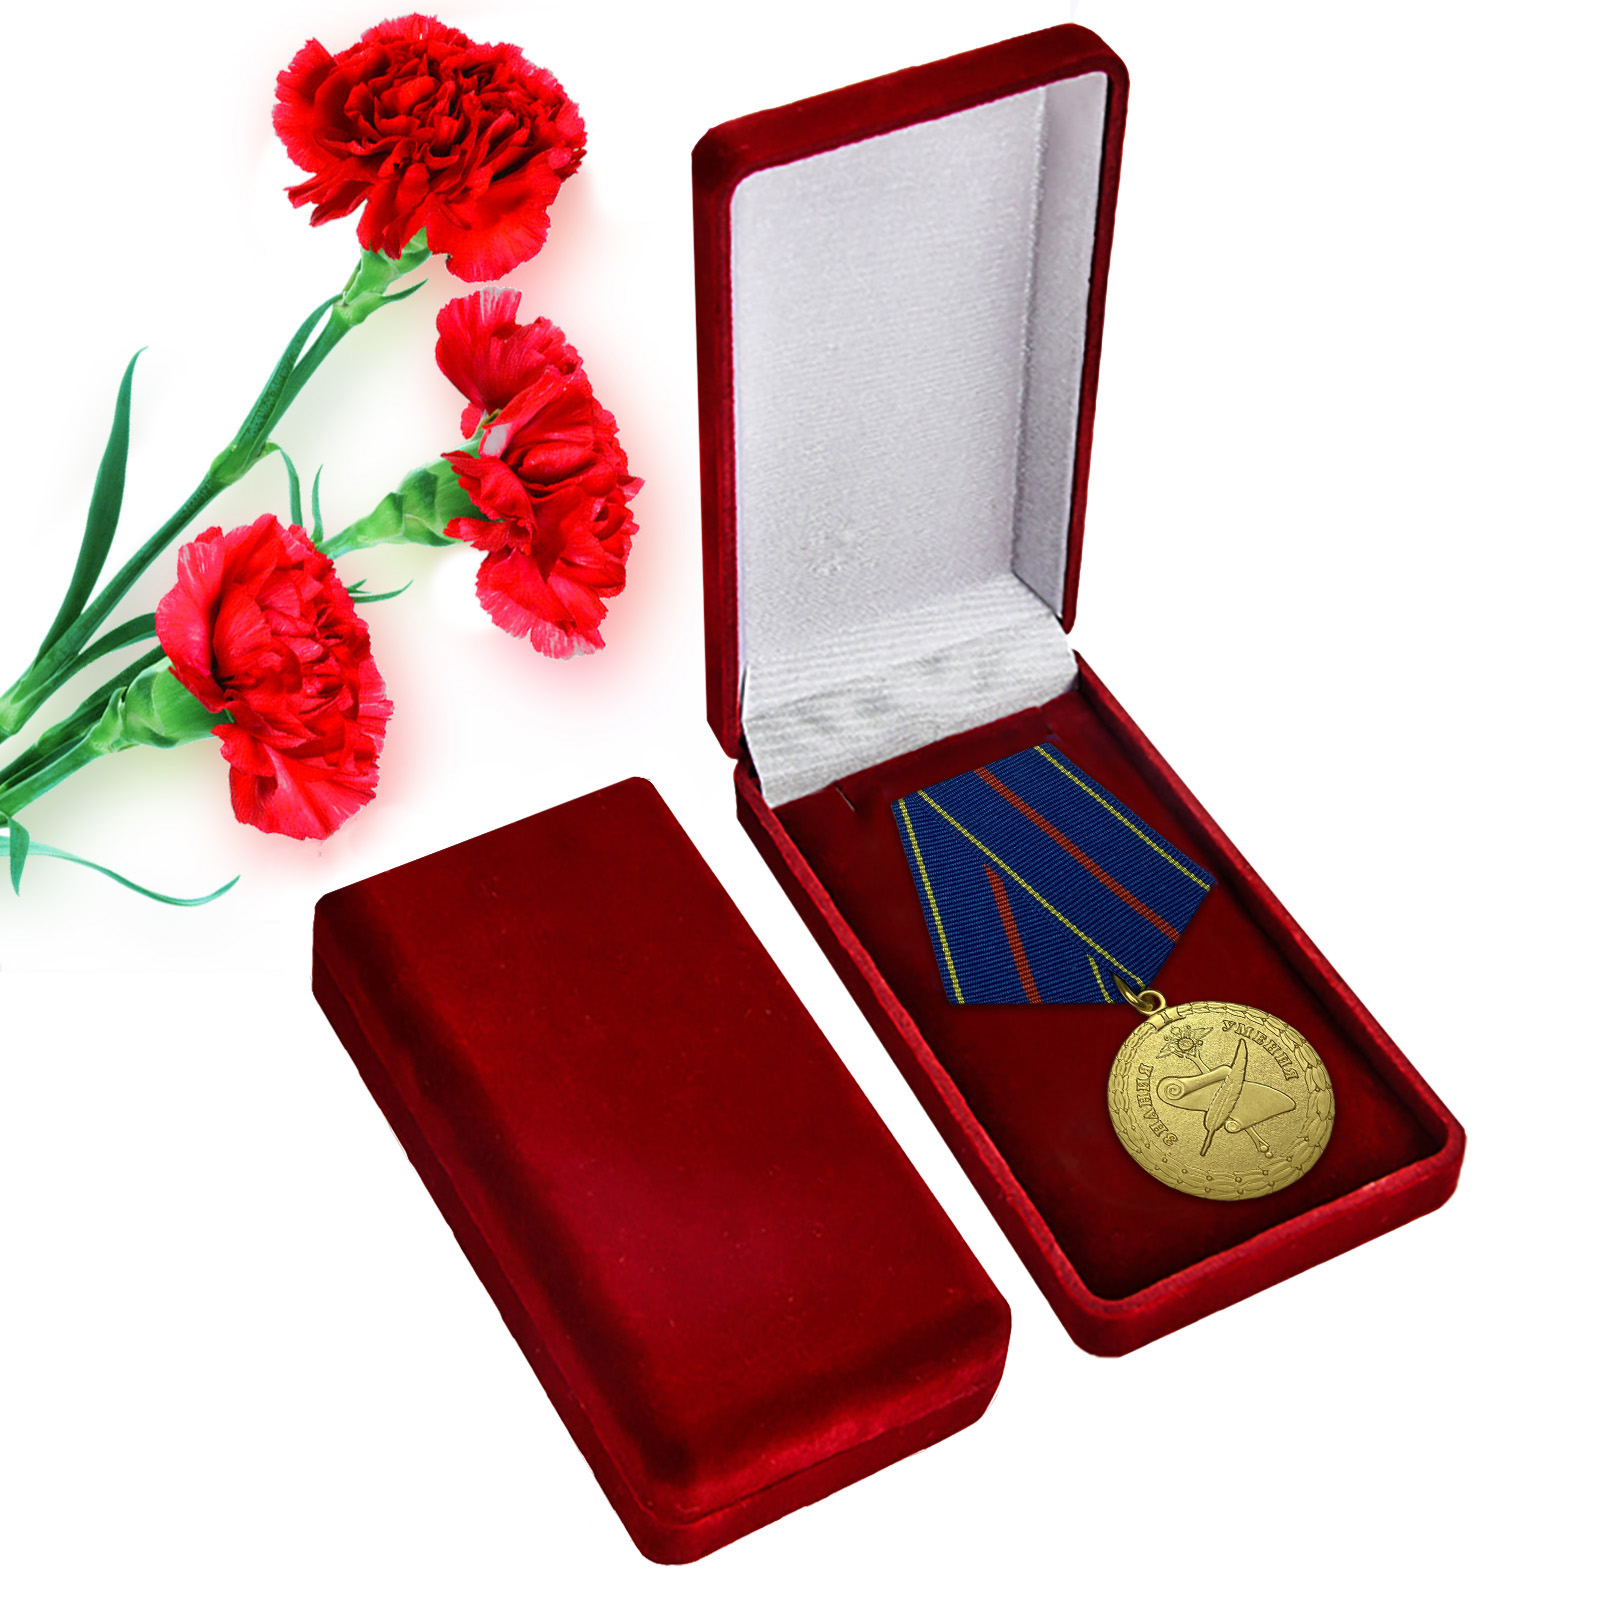 Купить латунную медаль За заслуги в управленческой деятельности МВД РФ 1 степени онлайн